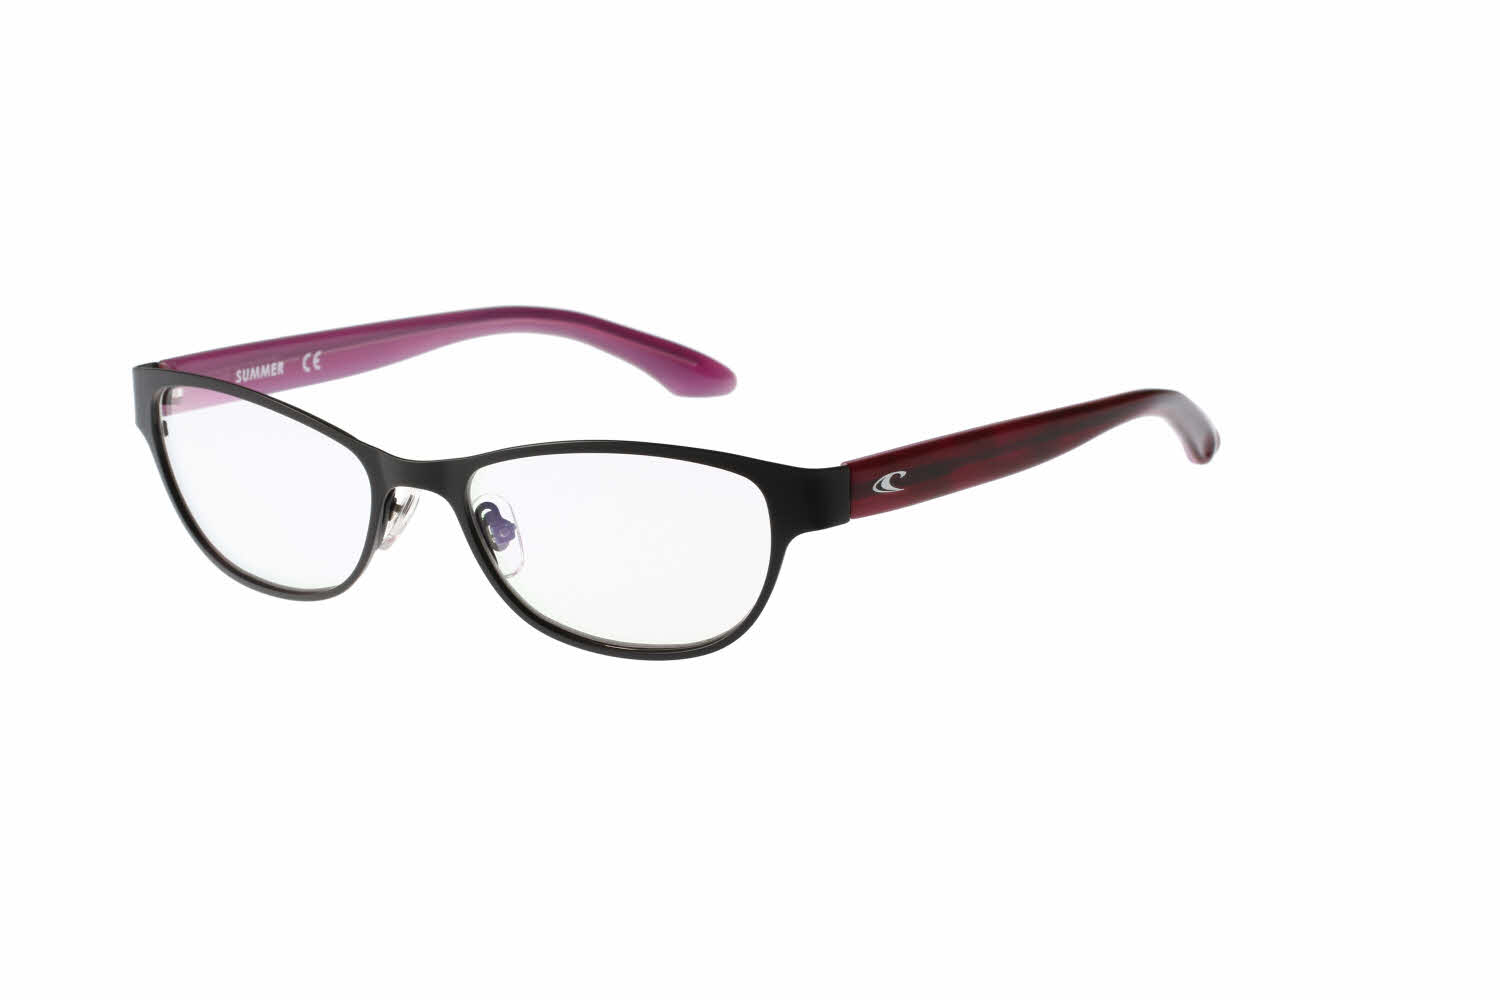 O'Neill Summer Women's Eyeglasses, In Black Purple